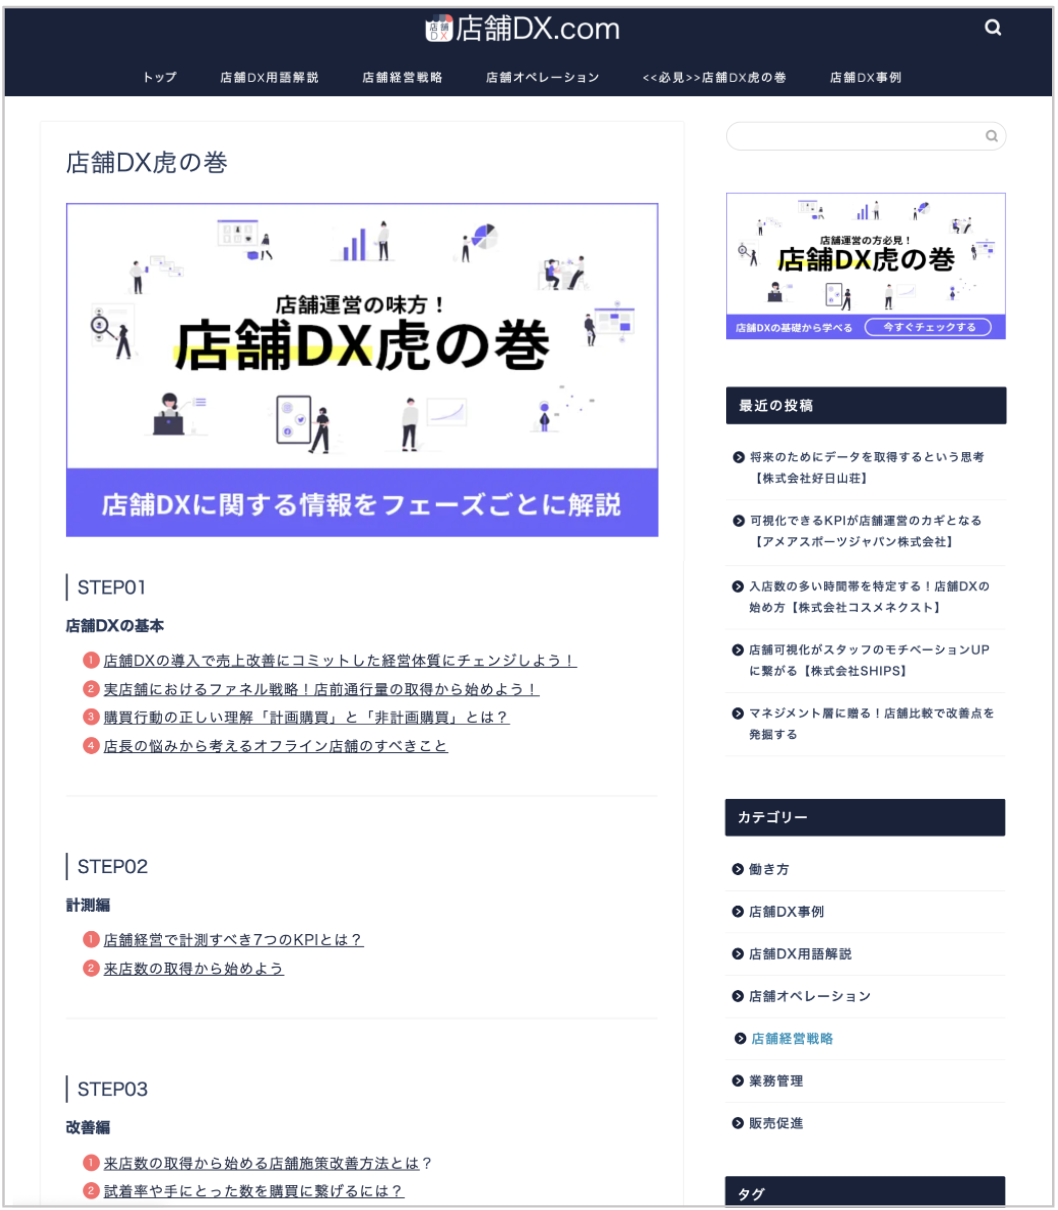 【リテール事業経営者・マネージャー向け】リアル店舗のDX促進メディア「店舗DX.com」をリリース